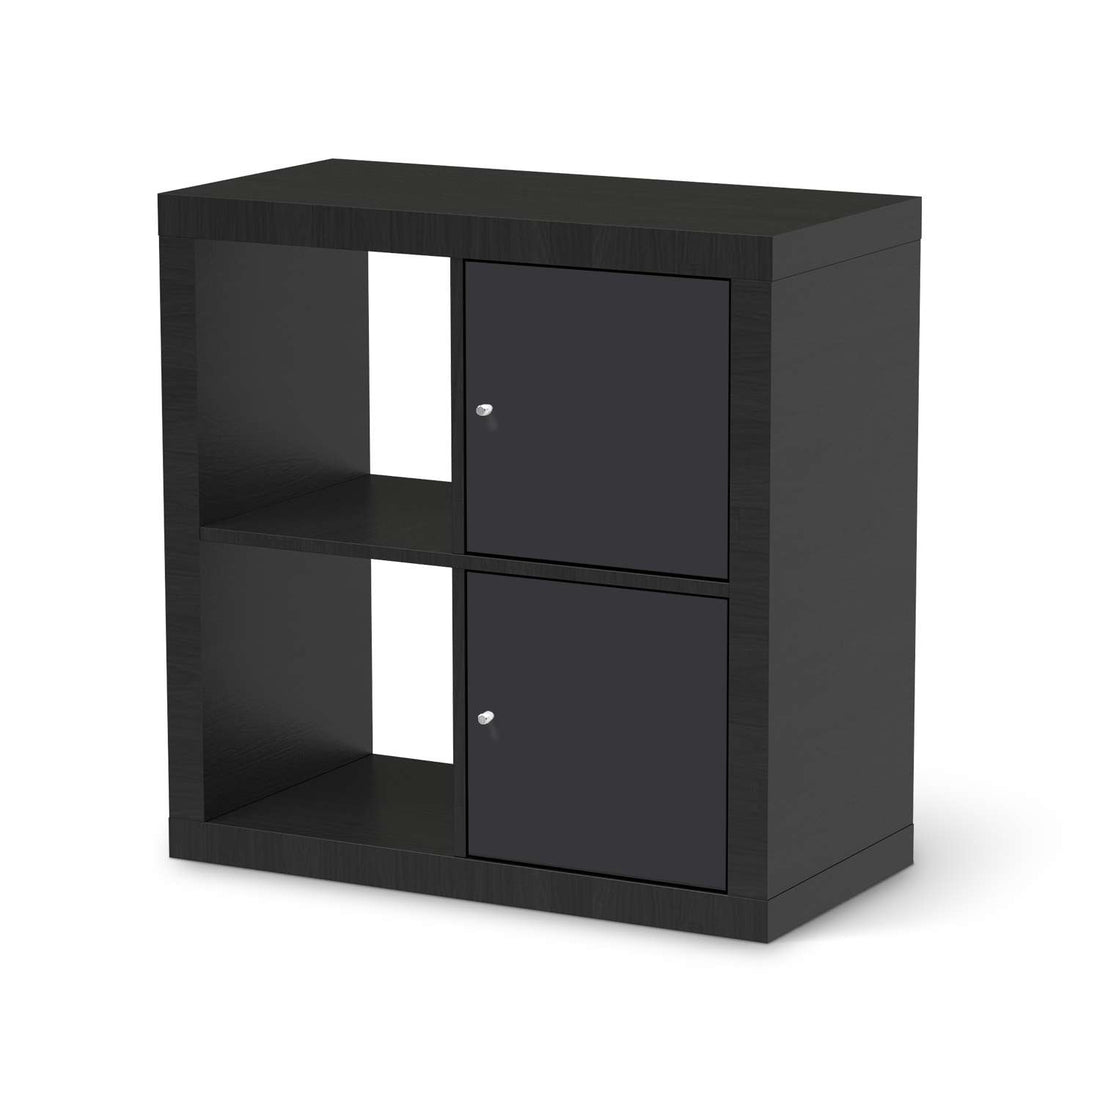 Klebefolie für Möbel Grau Dark - IKEA Expedit Regal 2 Türen Hoch - schwarz